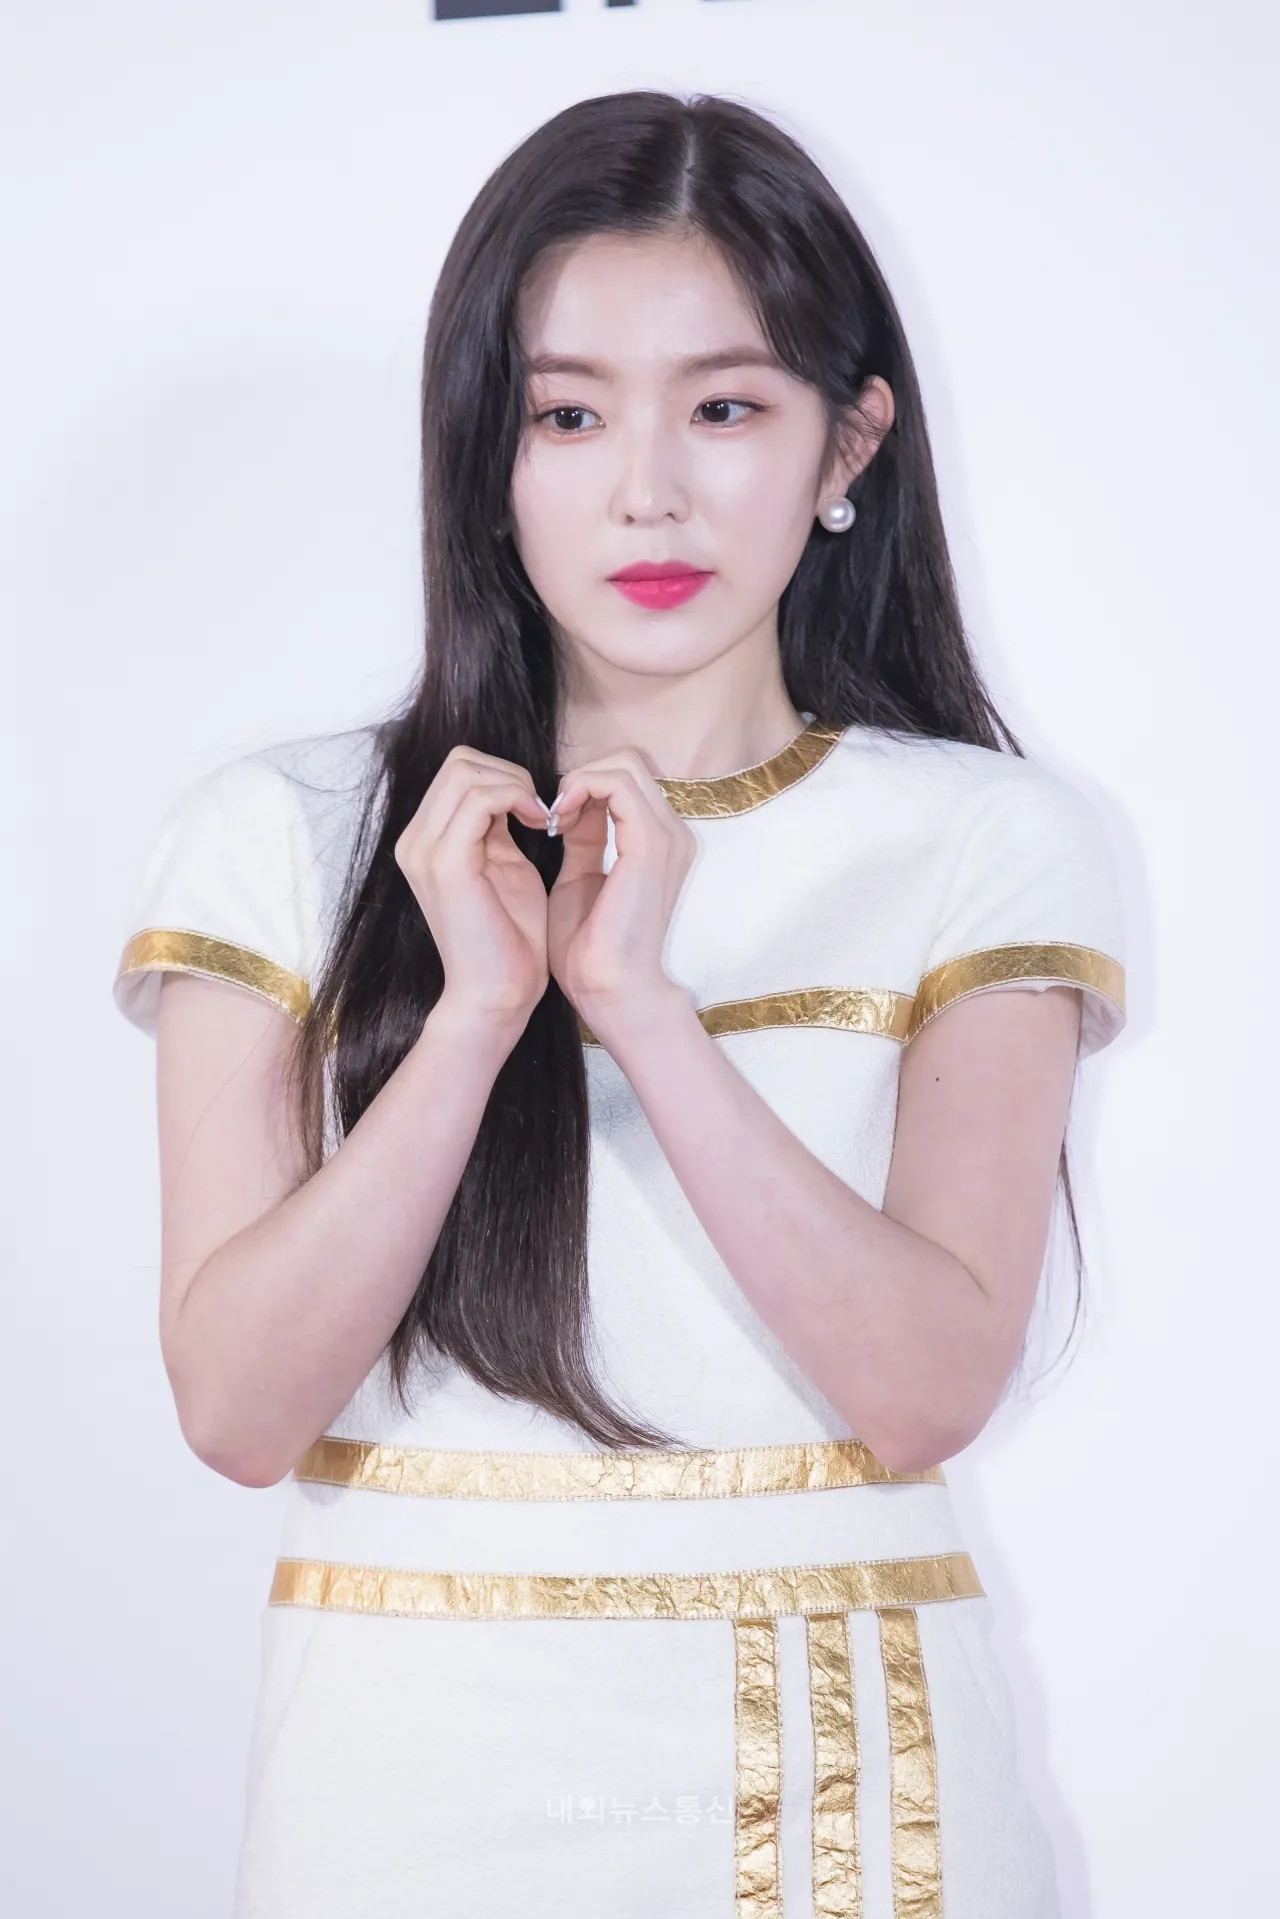 September 24, 2019 Red Velvet Irene at CHANEL Cosmetics event | Kpopping